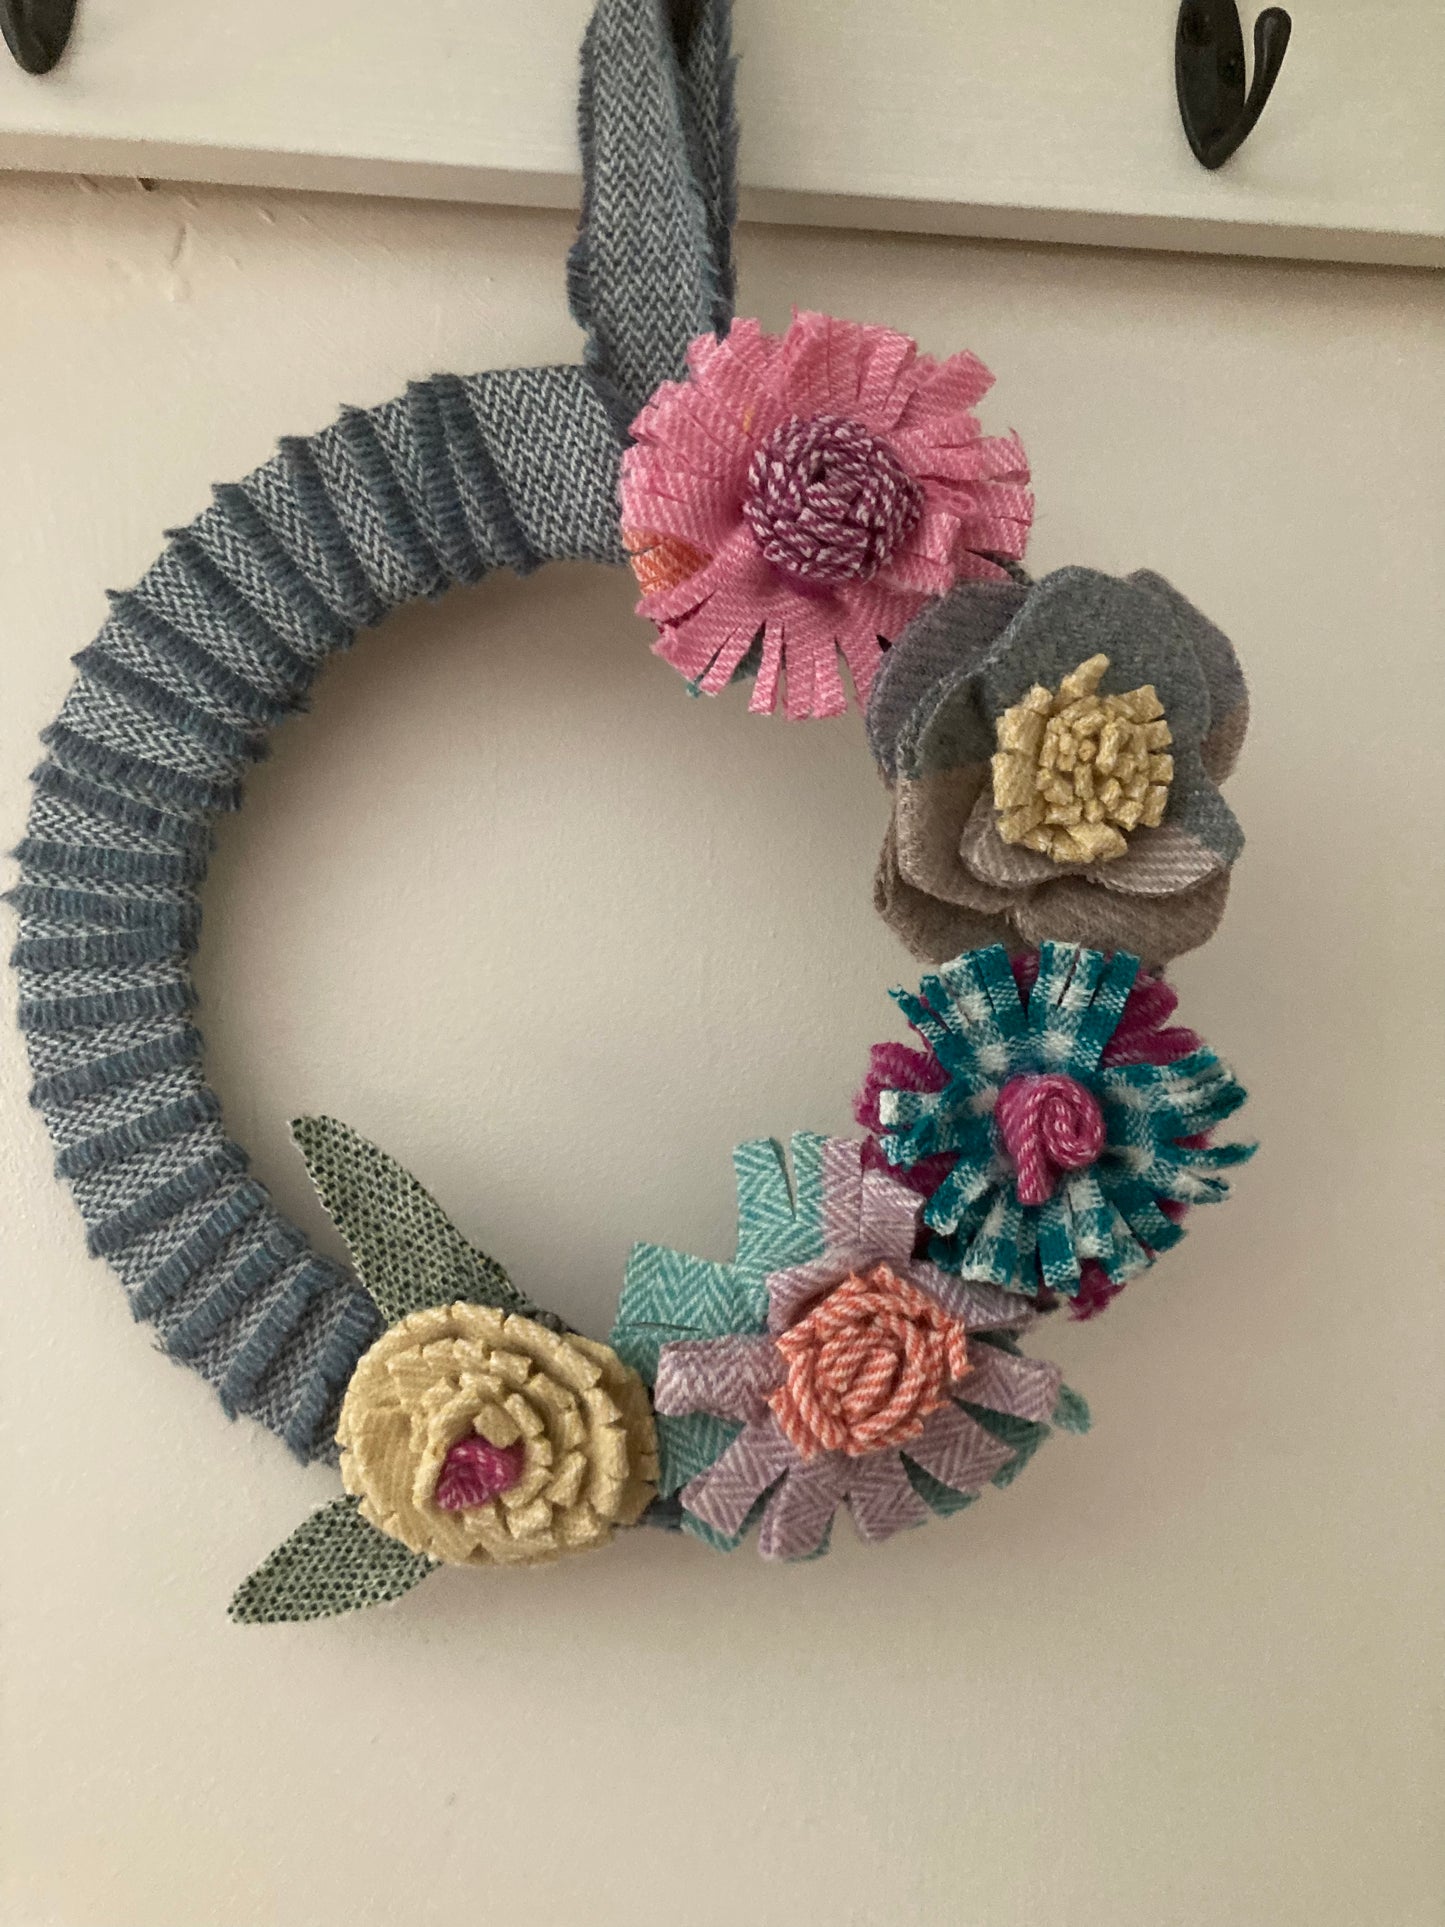 Tweed flower wreath